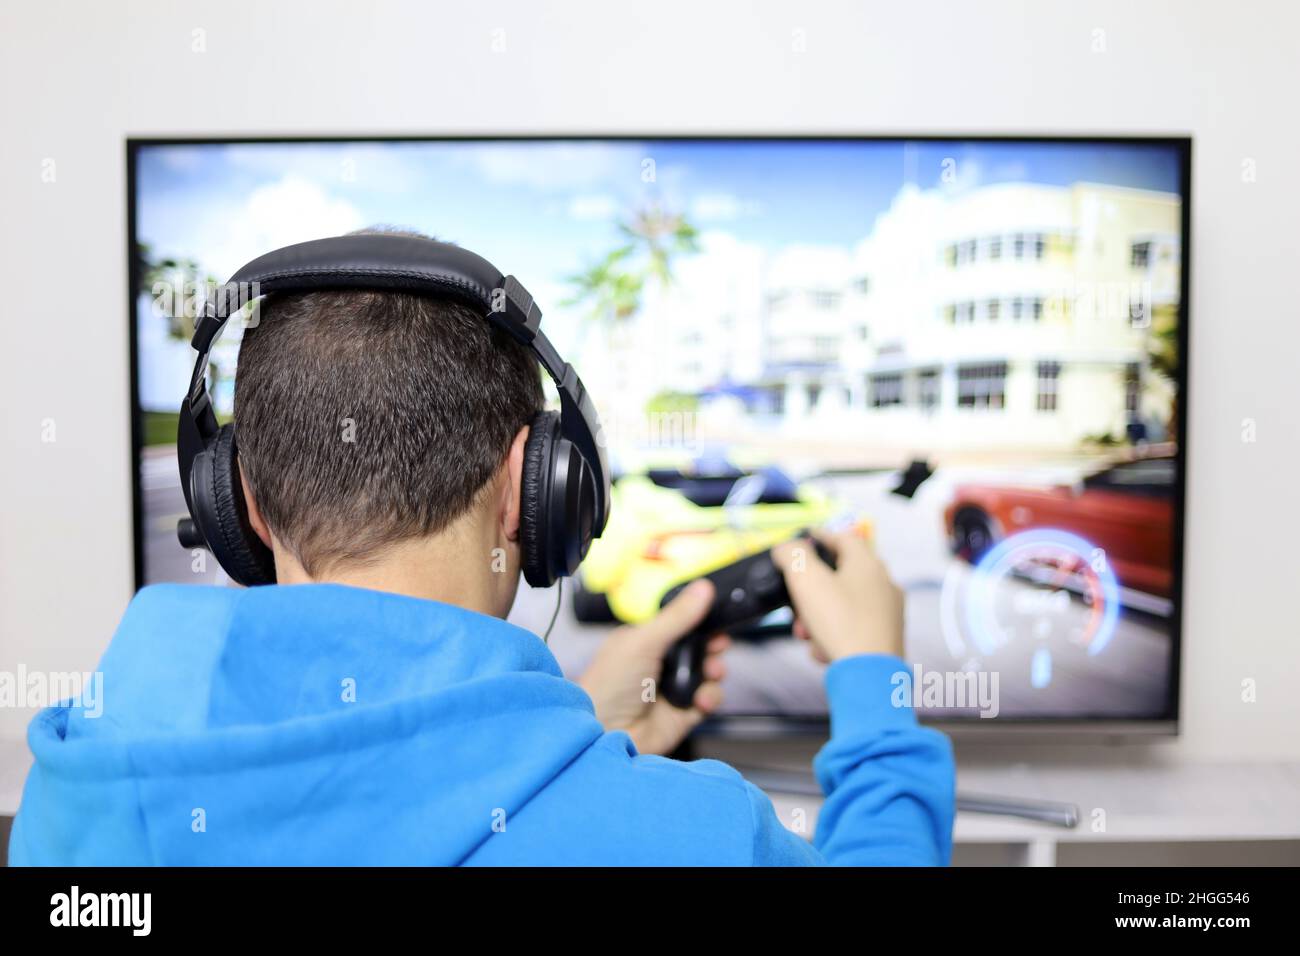 Guy in cuffie giocare con un gamepad un gioco di corse video sullo schermo della TV. Concetto di dipendenza da gioco, tempo libero a casa Foto Stock